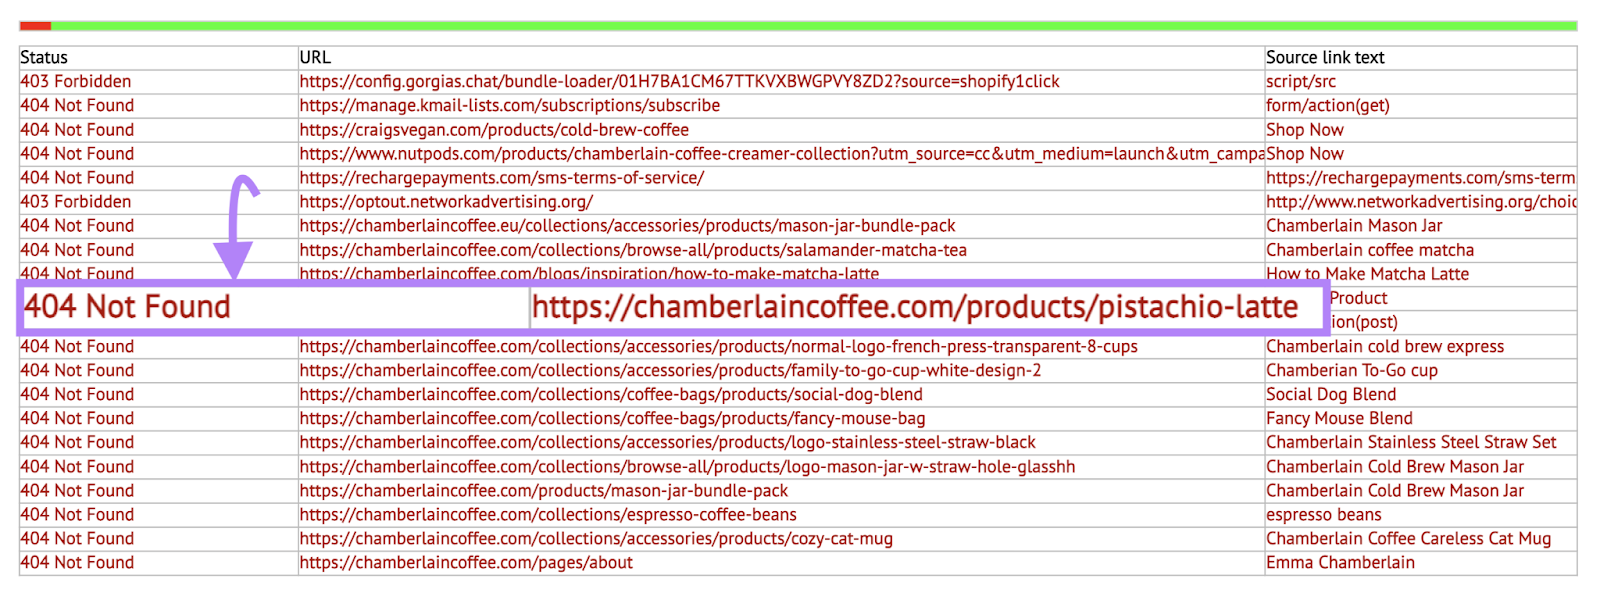 A list of broken URLs the Dead Link Checker tool found